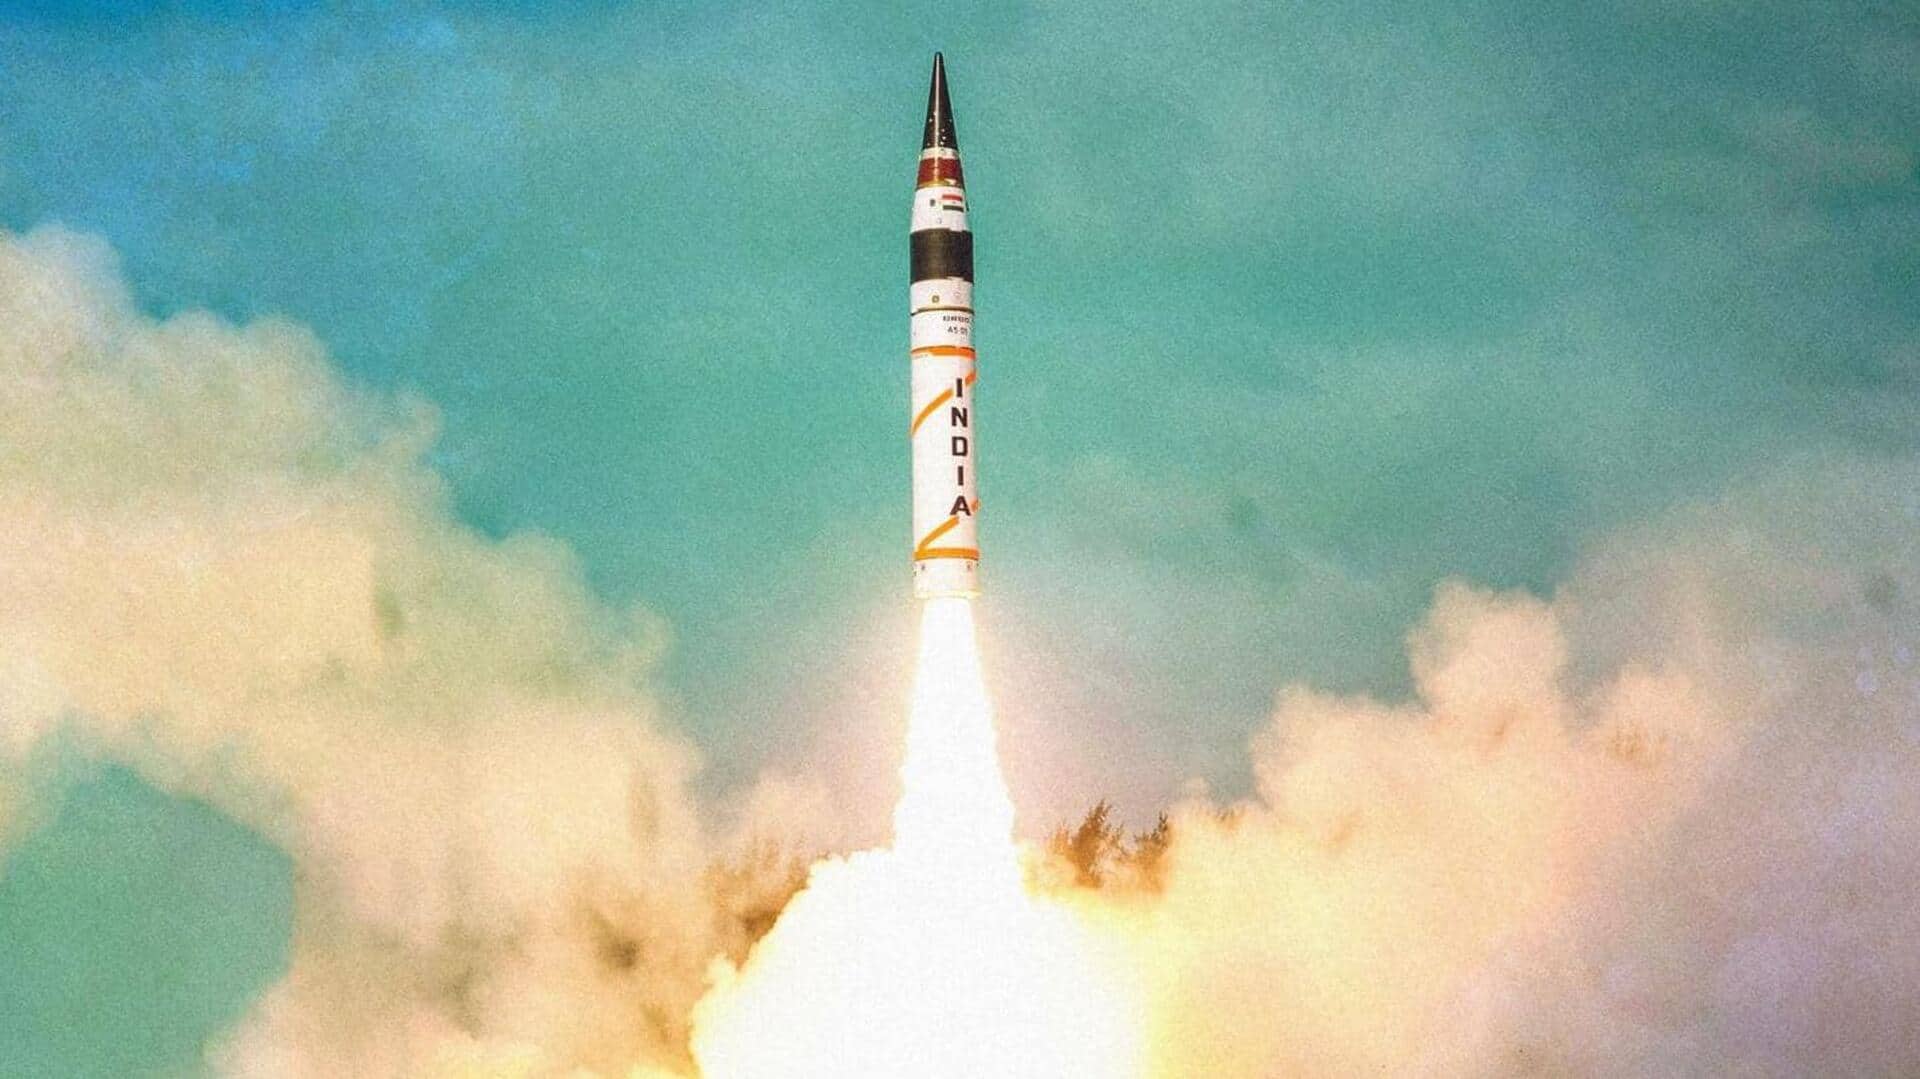 भारत ने किया एक साथ कई परमाणु हथियार ले जाने में सक्षम अग्नि-5 मिसाइल का परीक्षण